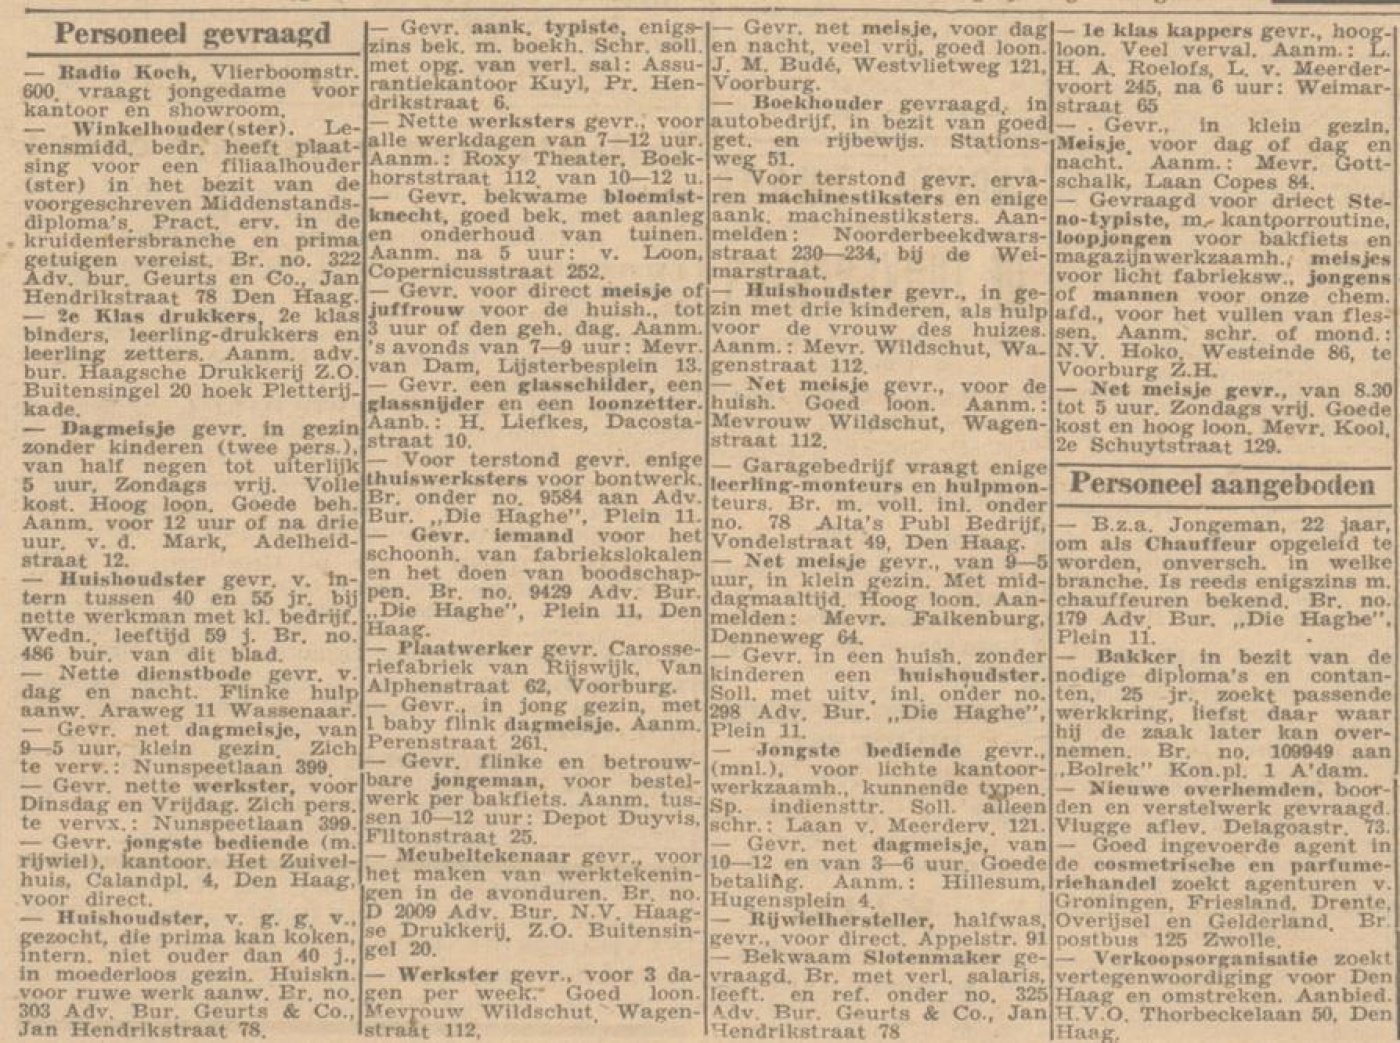 1945 augustus Het_Vrije_Volk_15-8-1945_advertenties.jpg